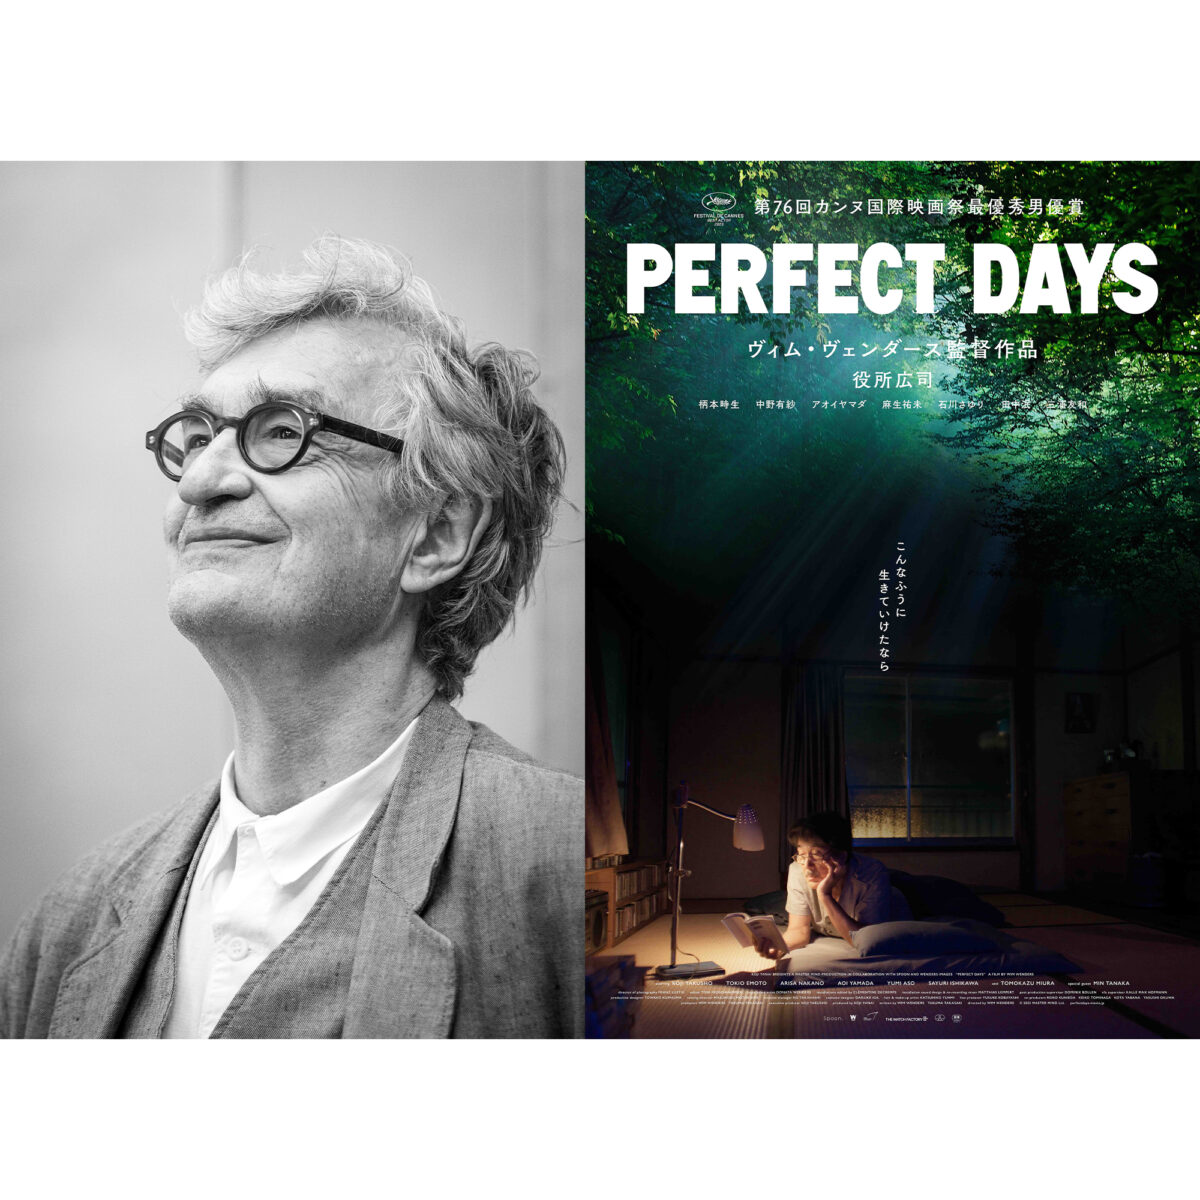 ヴィム・ヴェンダース監督が新作の映画『PERFECT DAYS』への思いを語る。Wi...